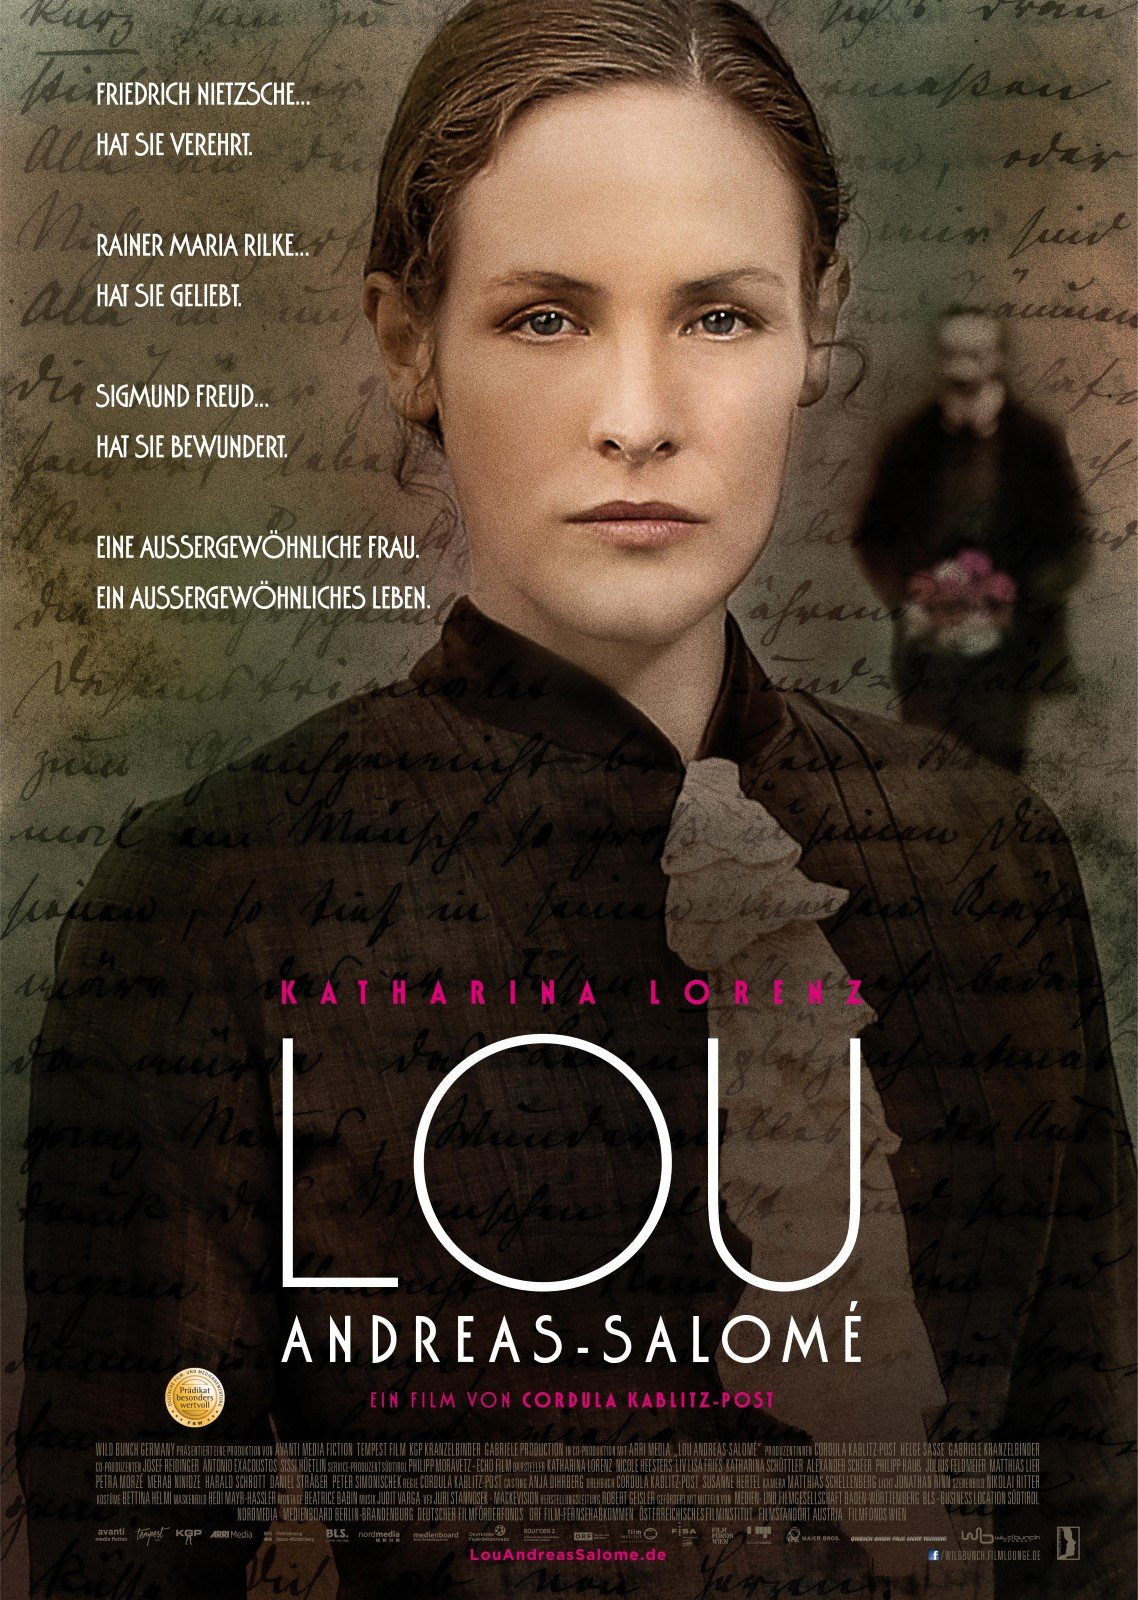 Lou Andreas-Salomé : Affiche